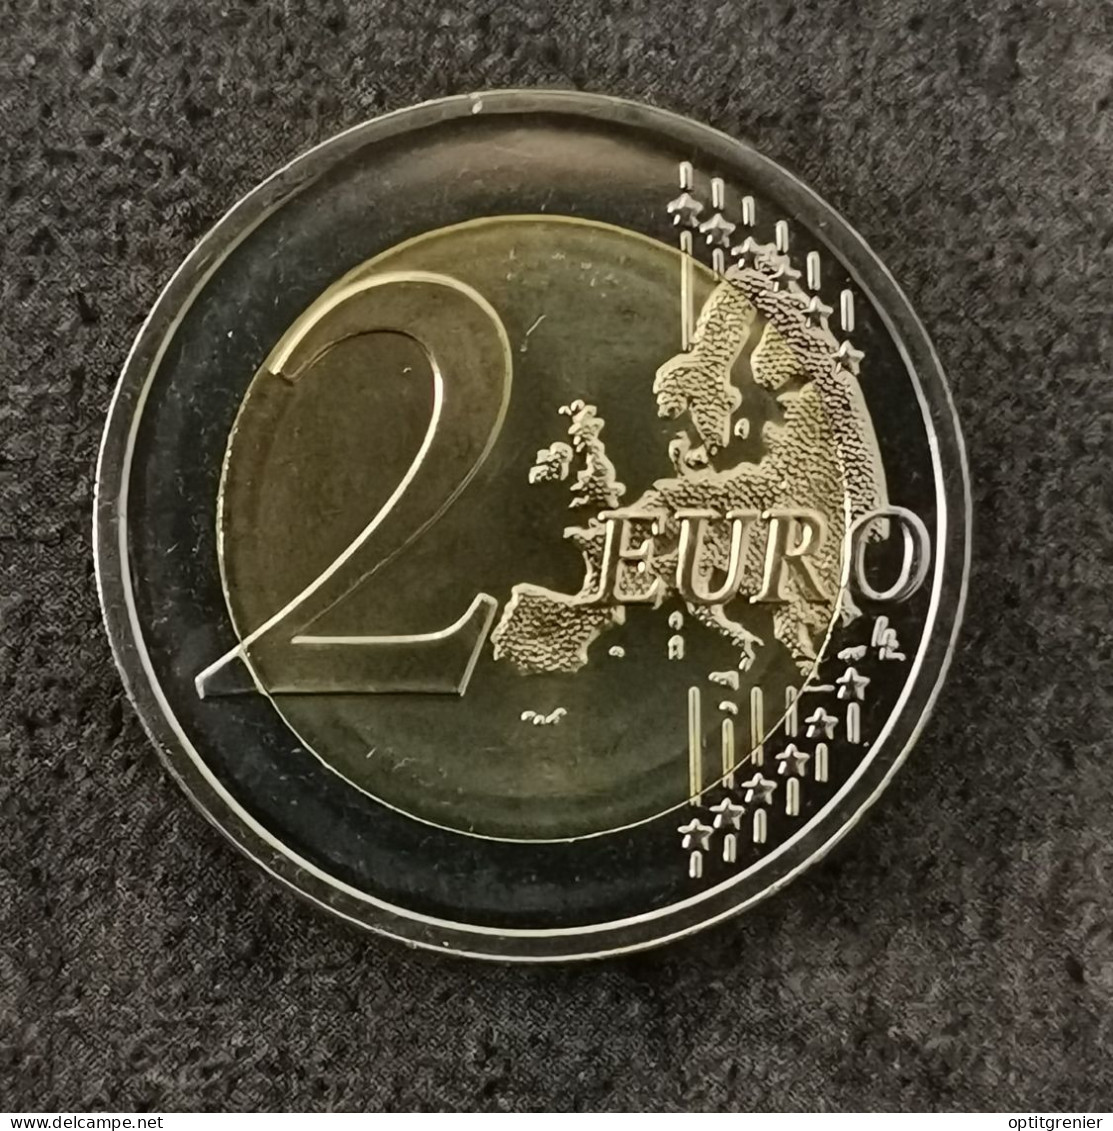 2 EURO 2015 LITUANIE / EUROS CENT LIETUVA - Litouwen